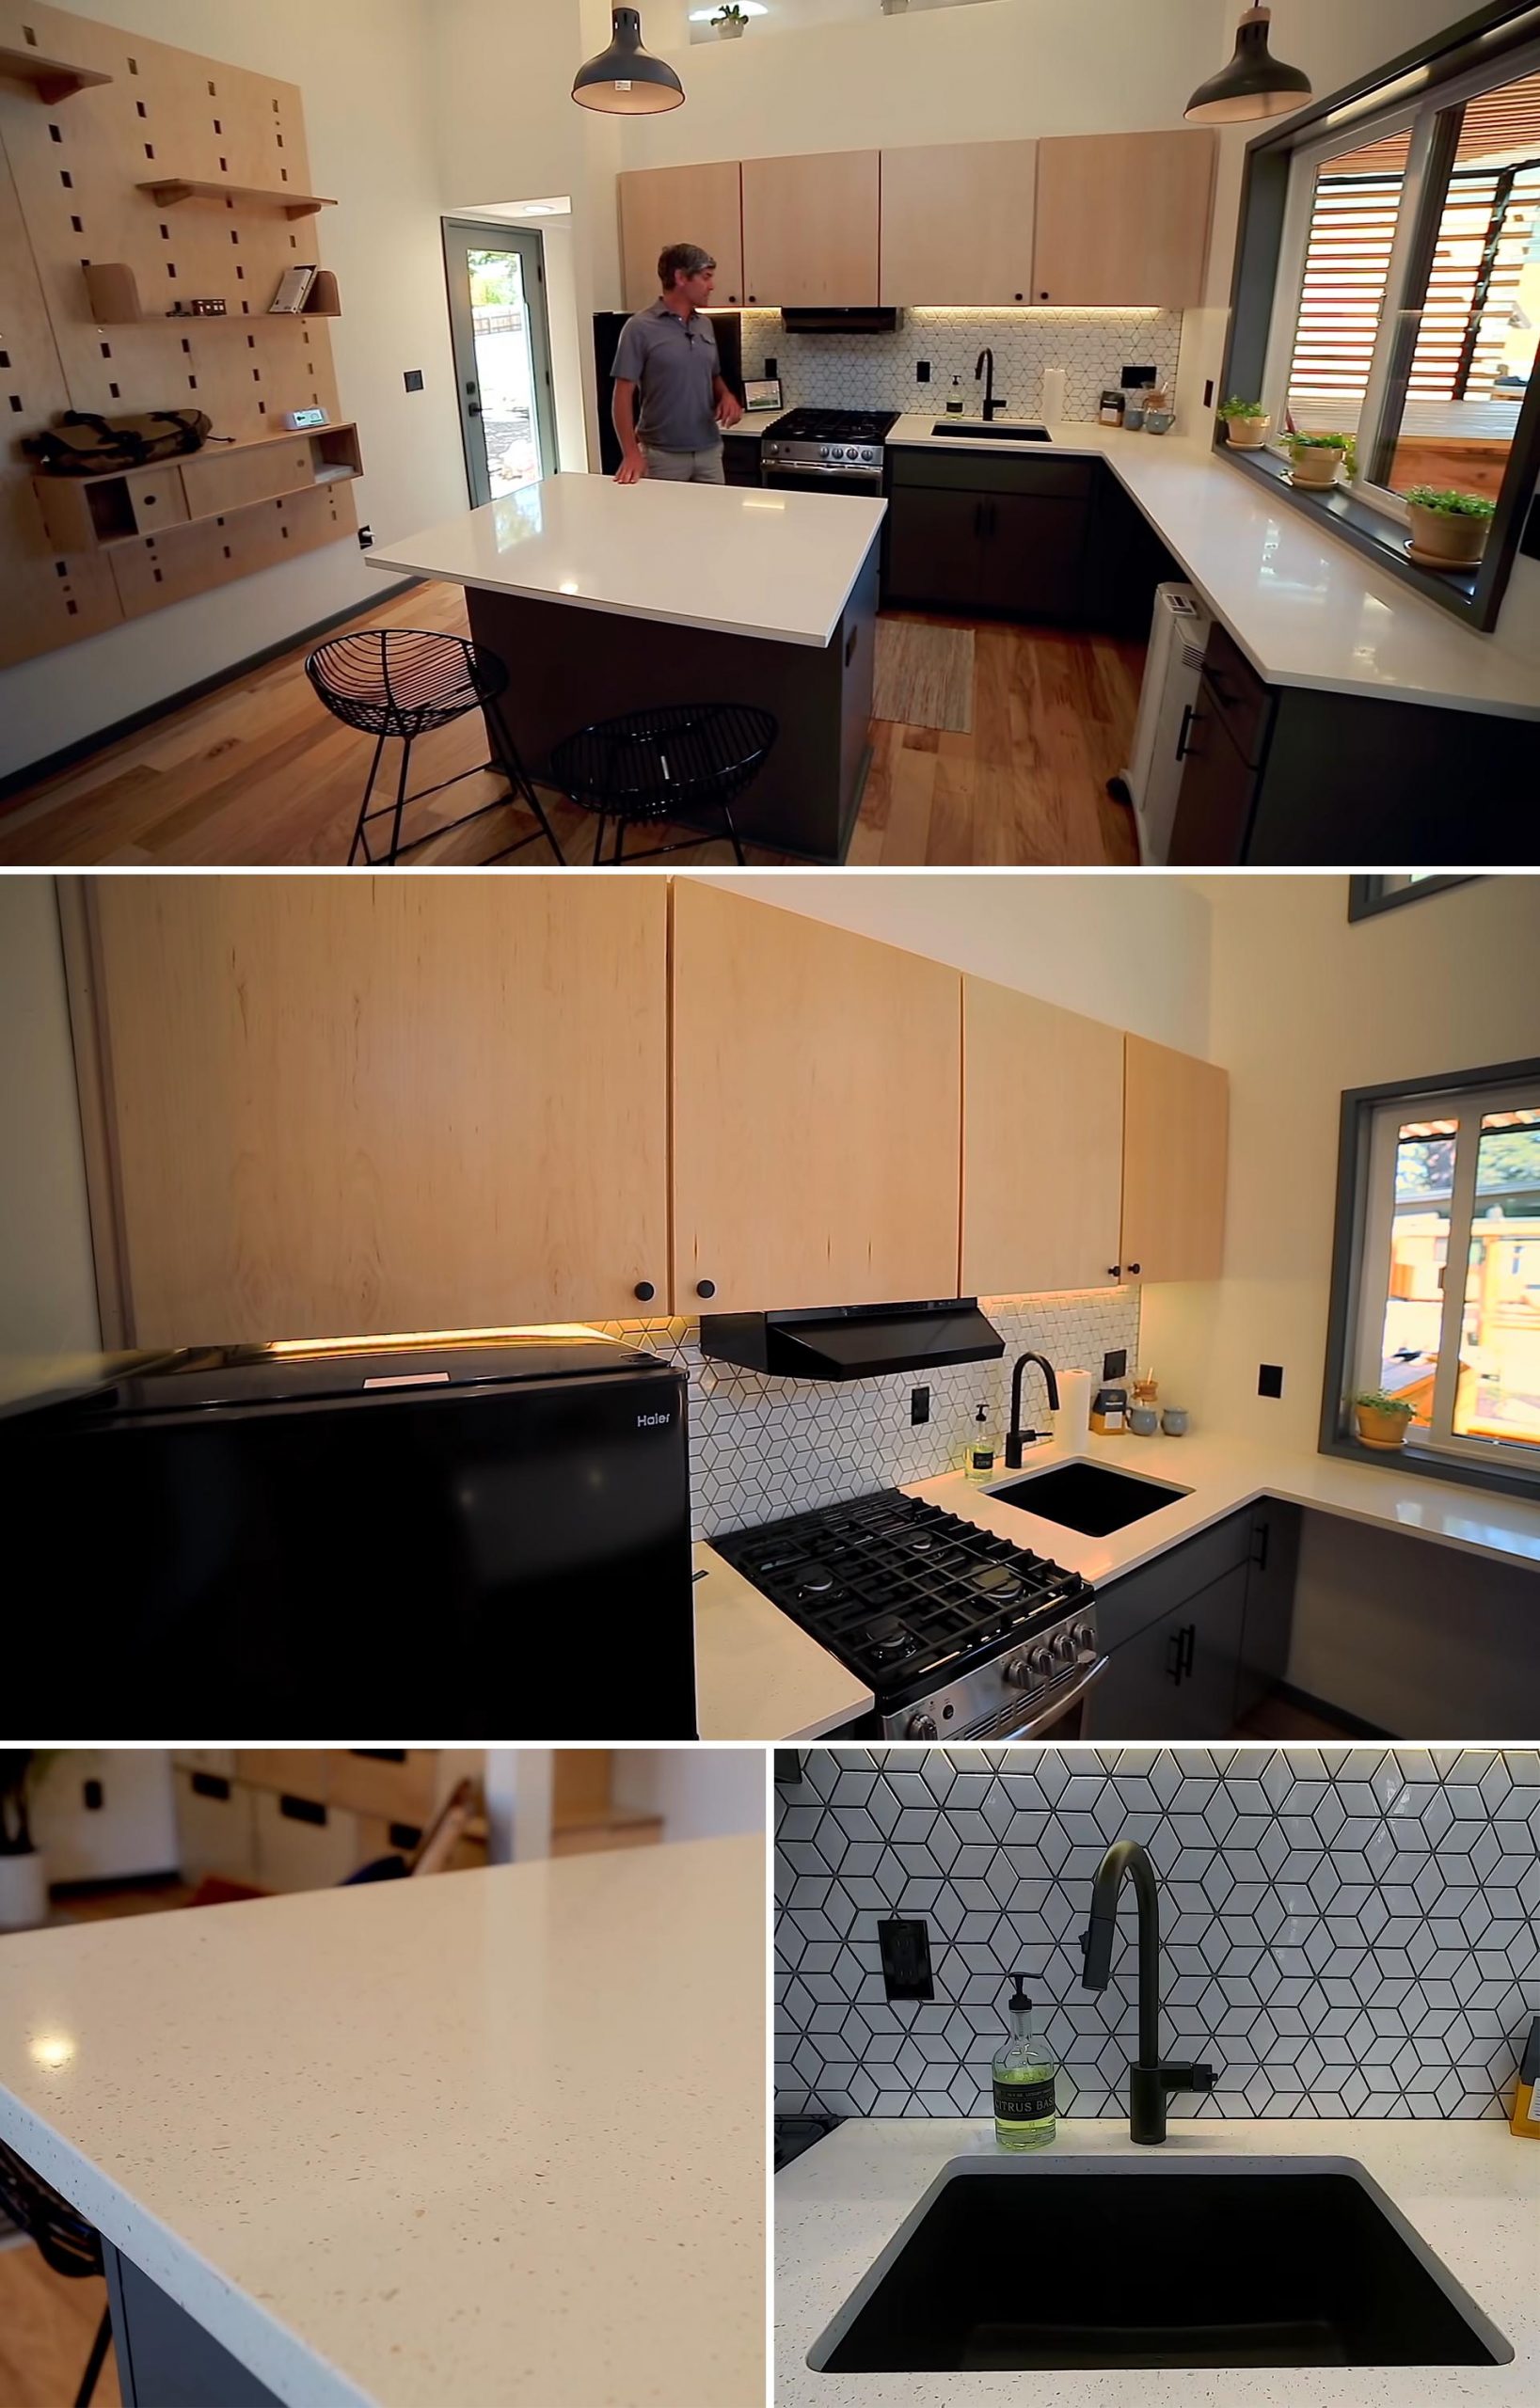 Крошечная домашняя кухня с кварцевыми столешницами, 24-дюймовой бытовой техникой, прилавком и большой черной раковиной.